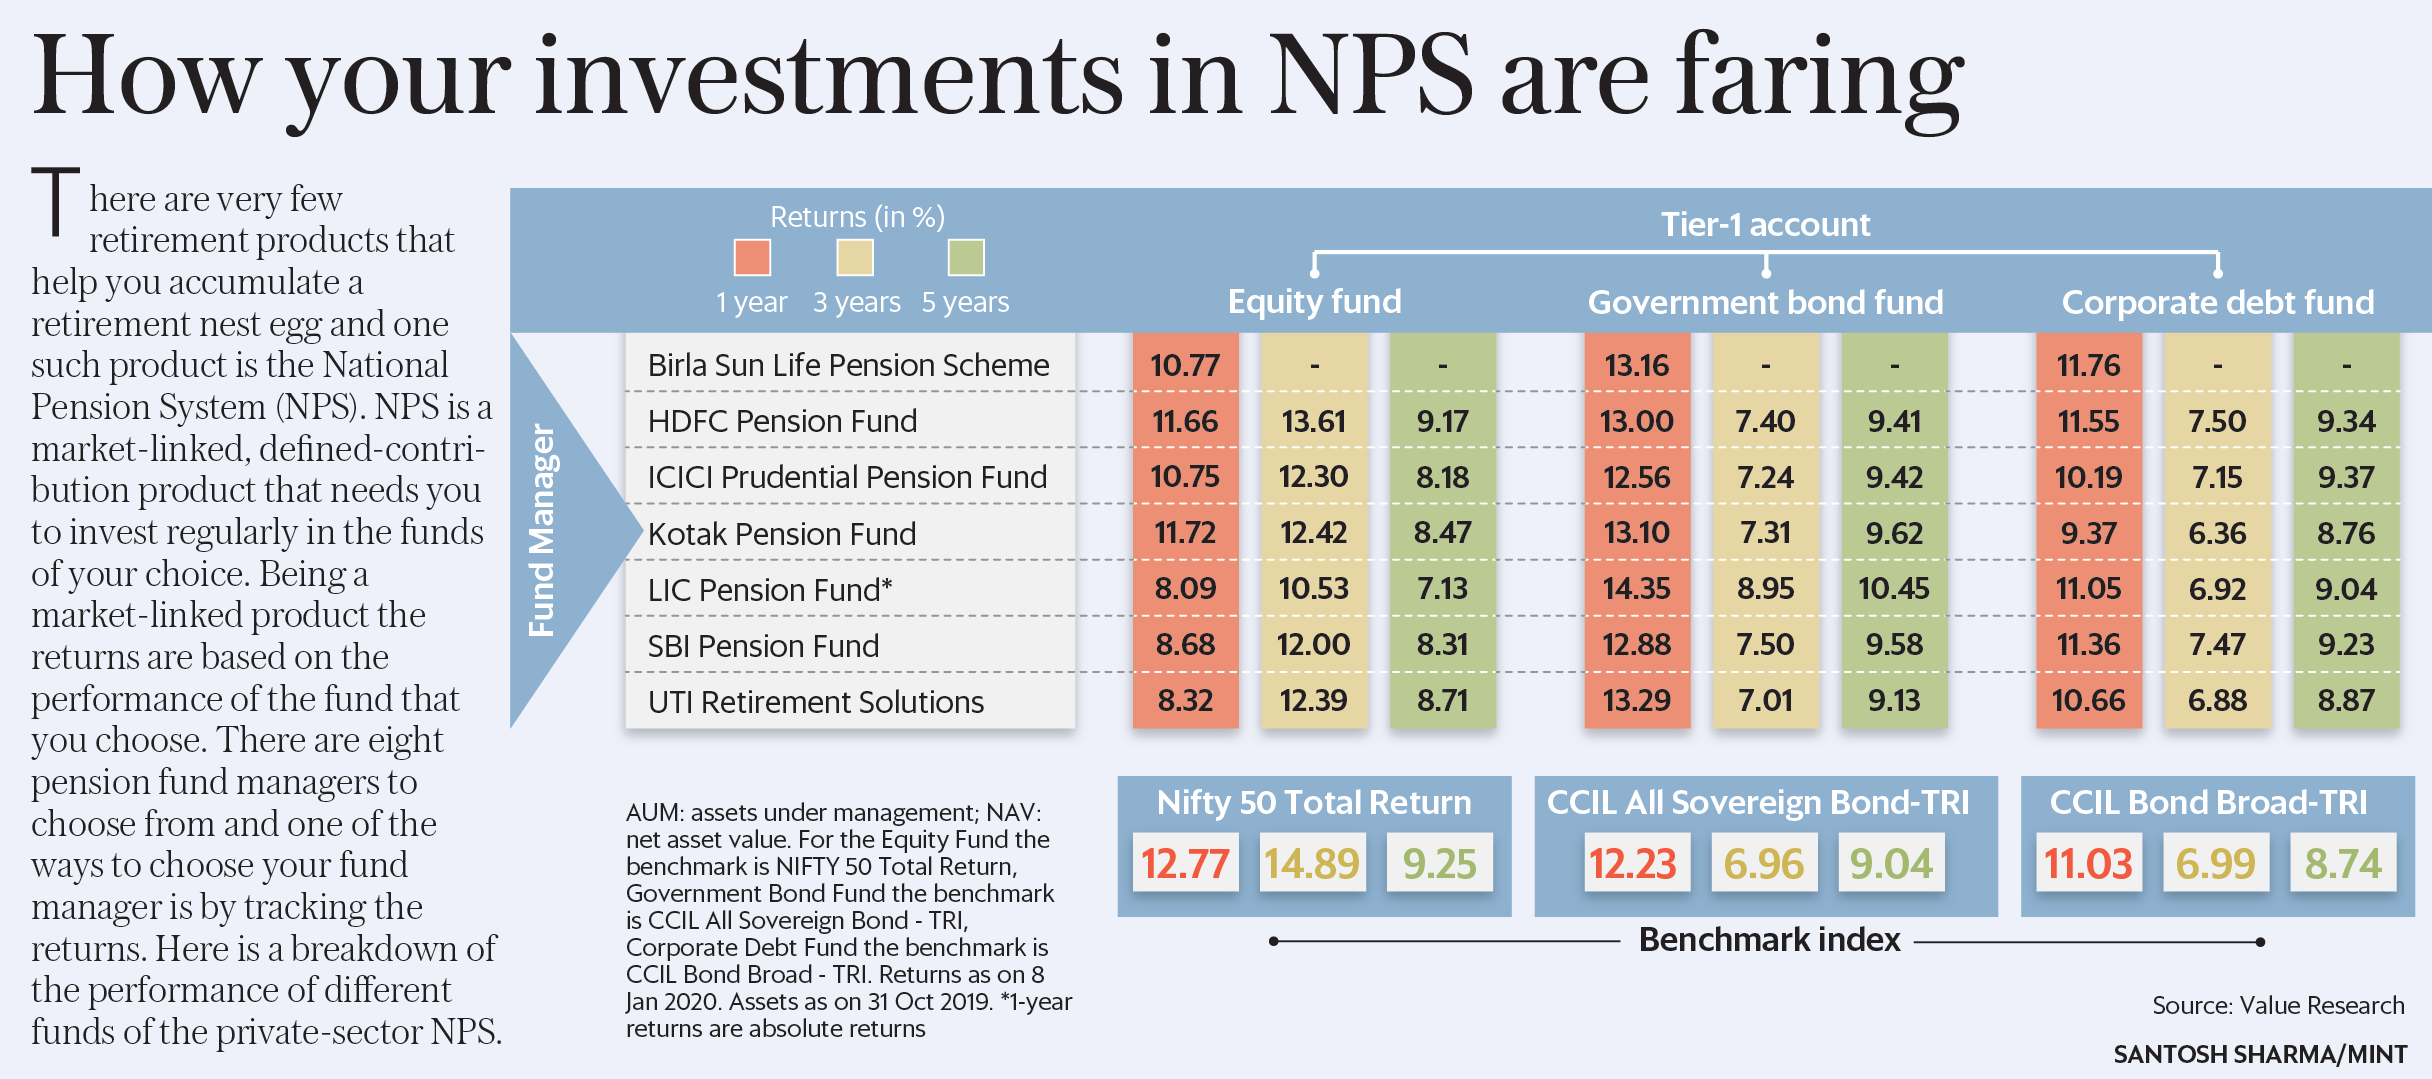 這是私營部門NPS不同基金業績的細分